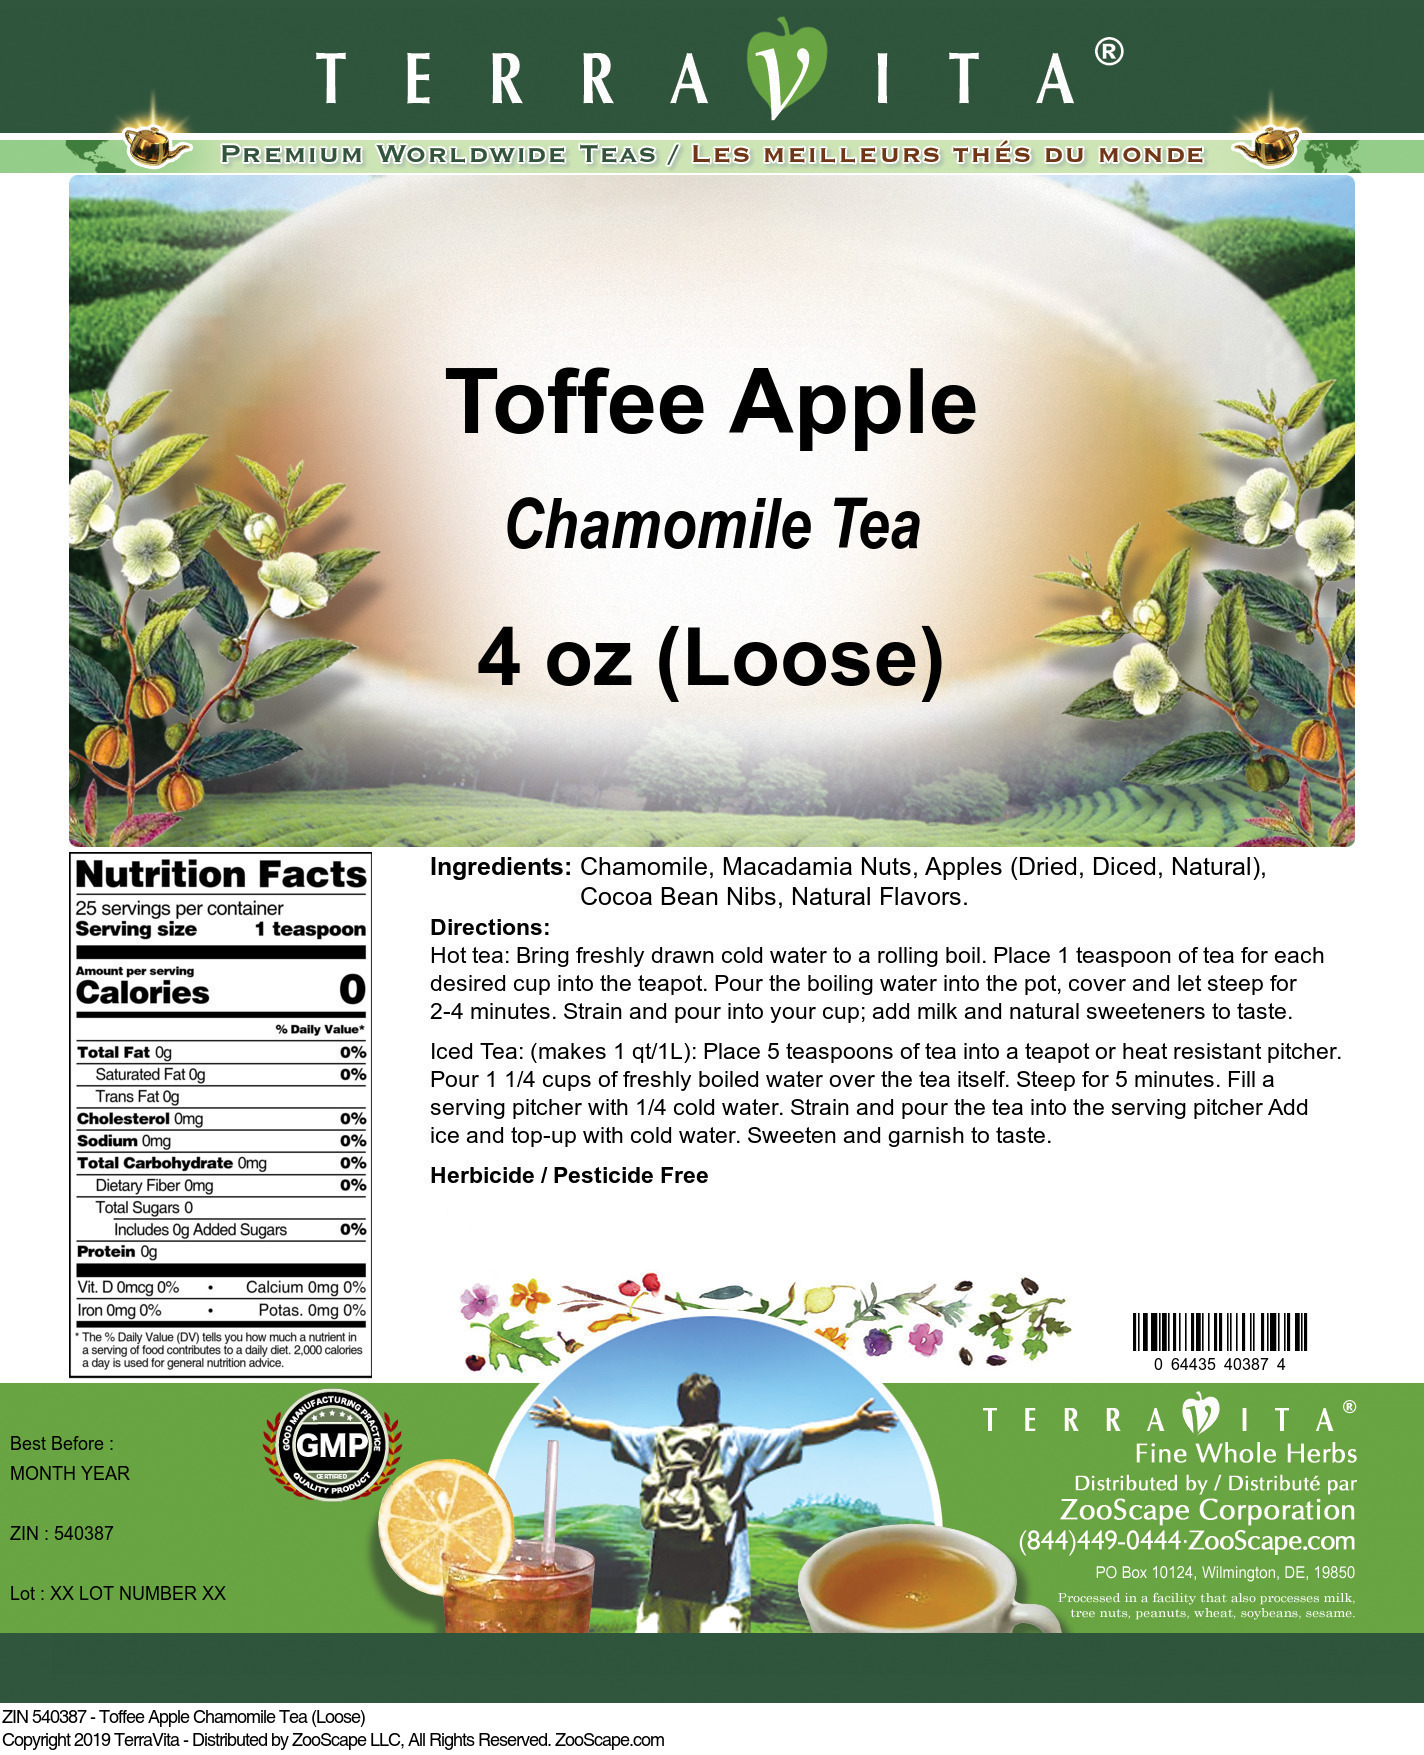 Toffee Apple Chamomile Tea (Loose) - Label